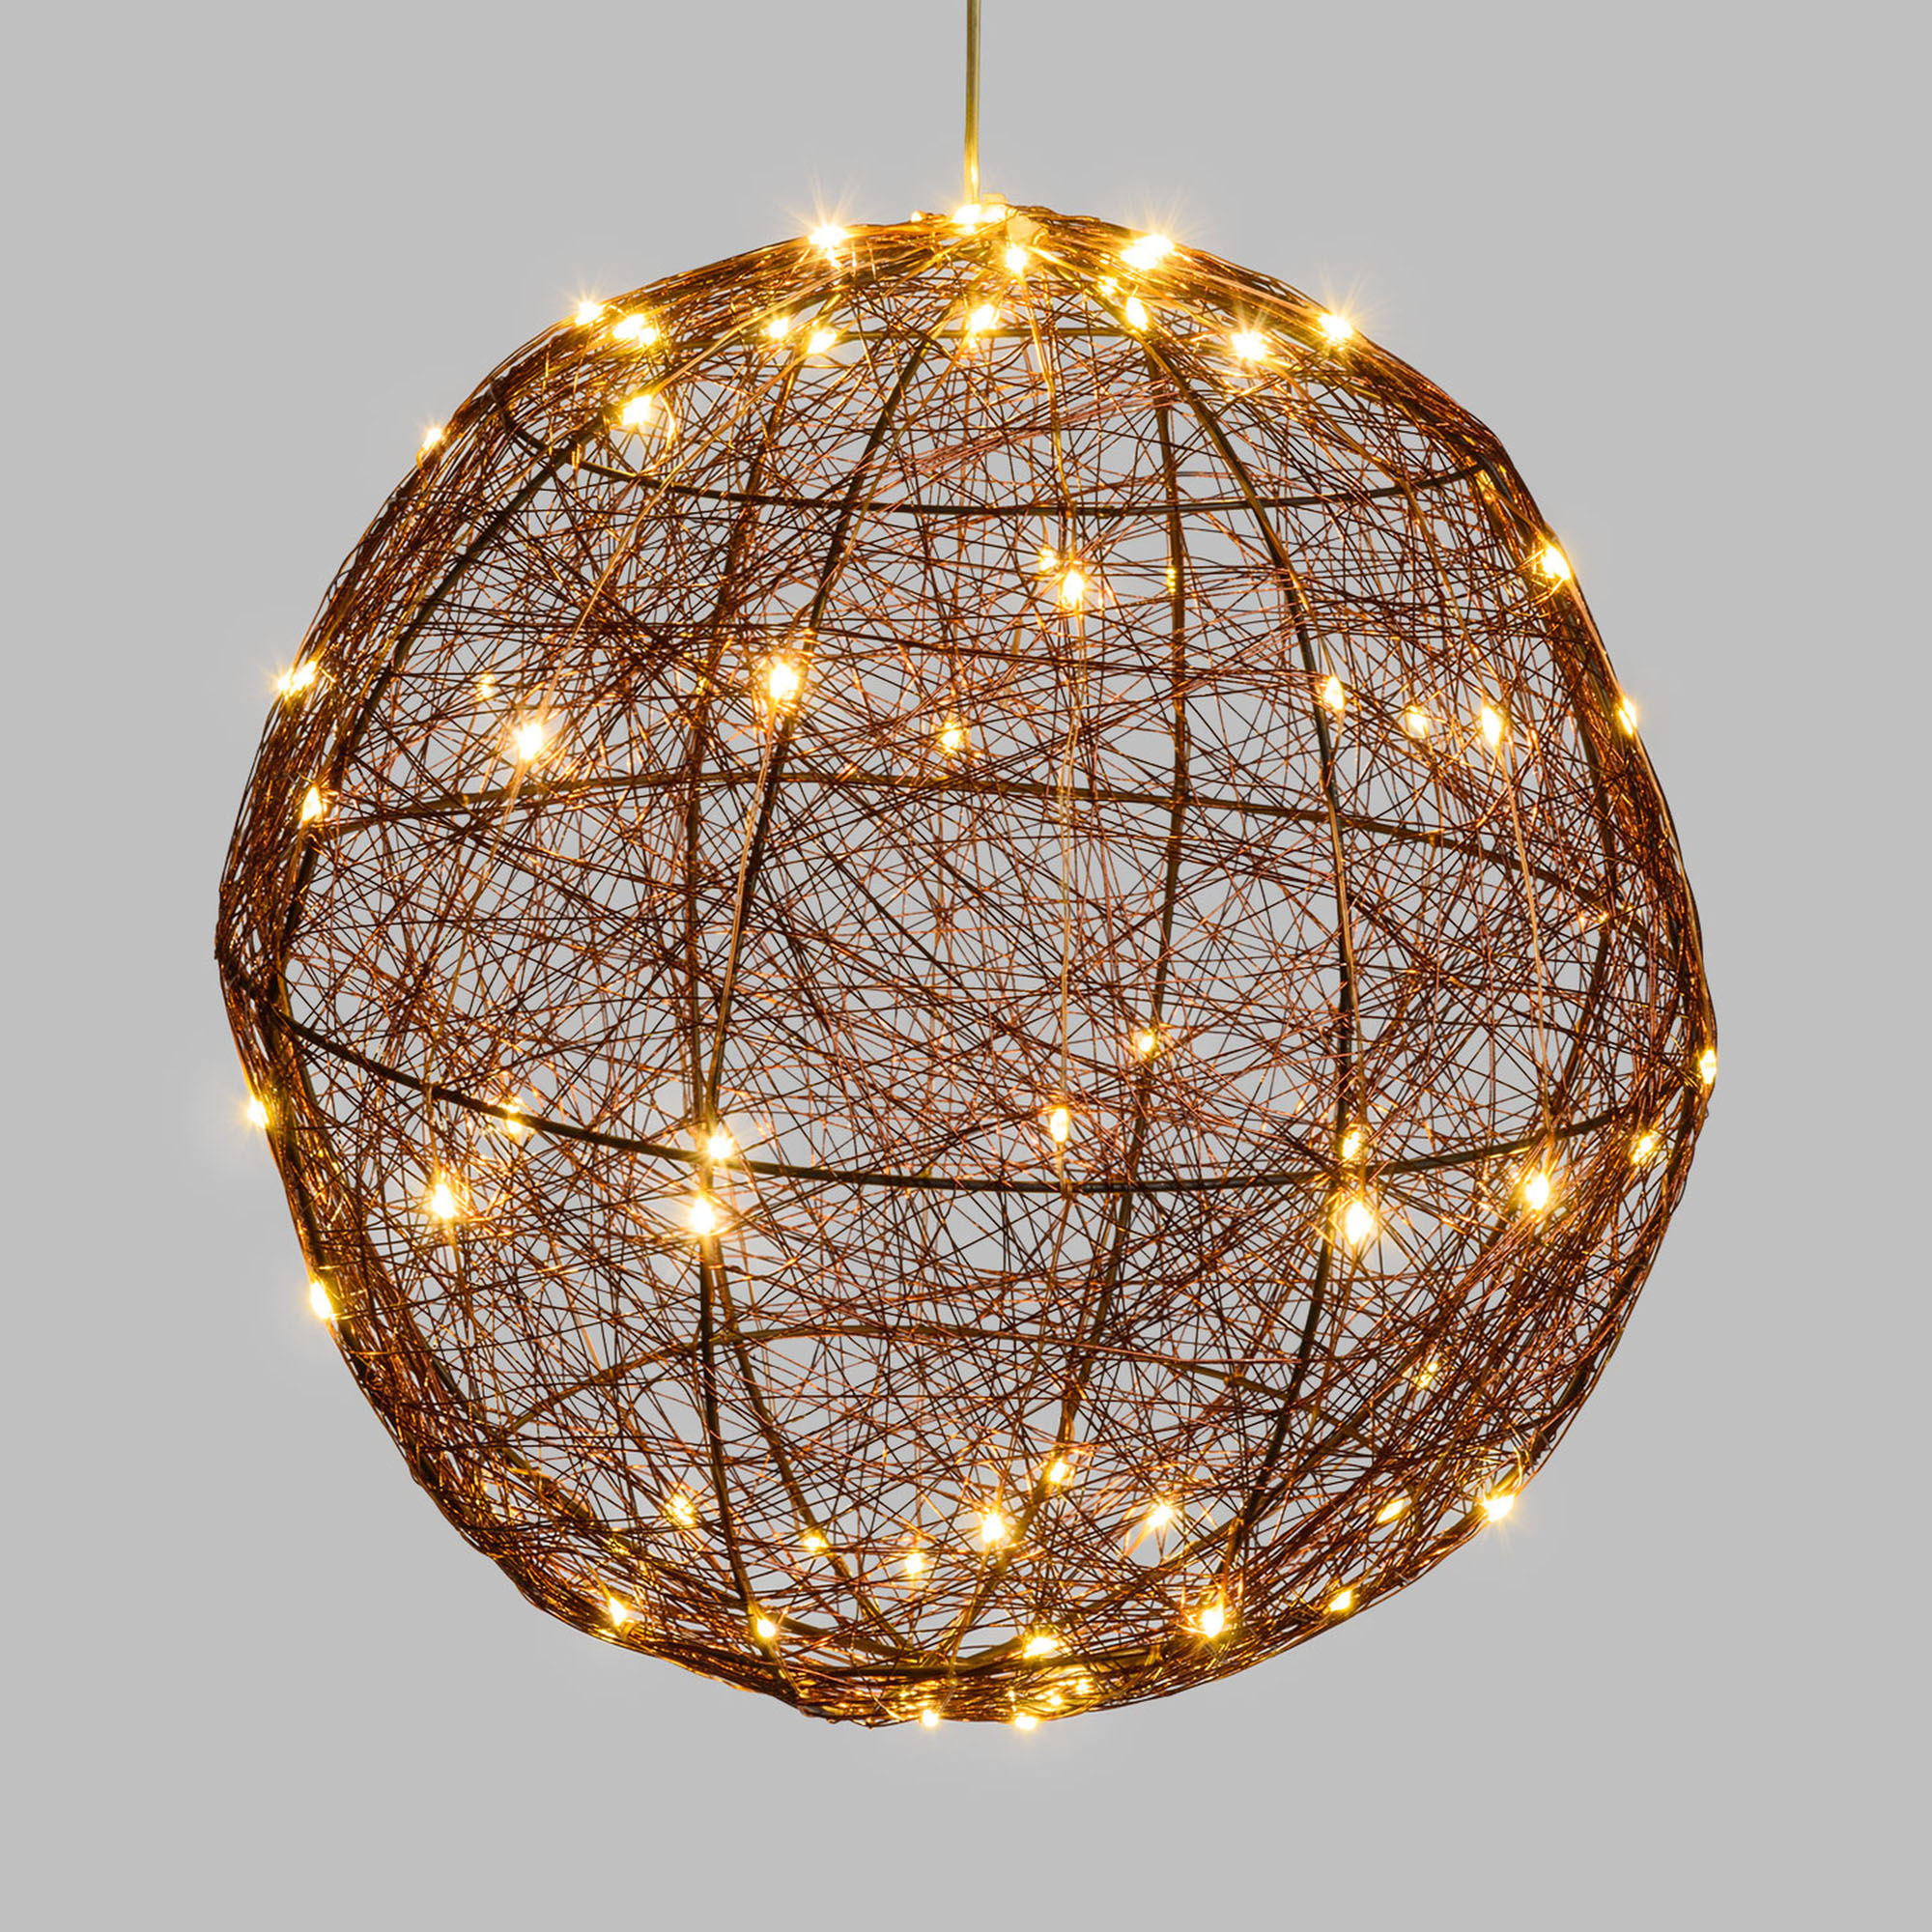 LED Ball, 160 warm white LEDs, Copper-coloured Metal Frame